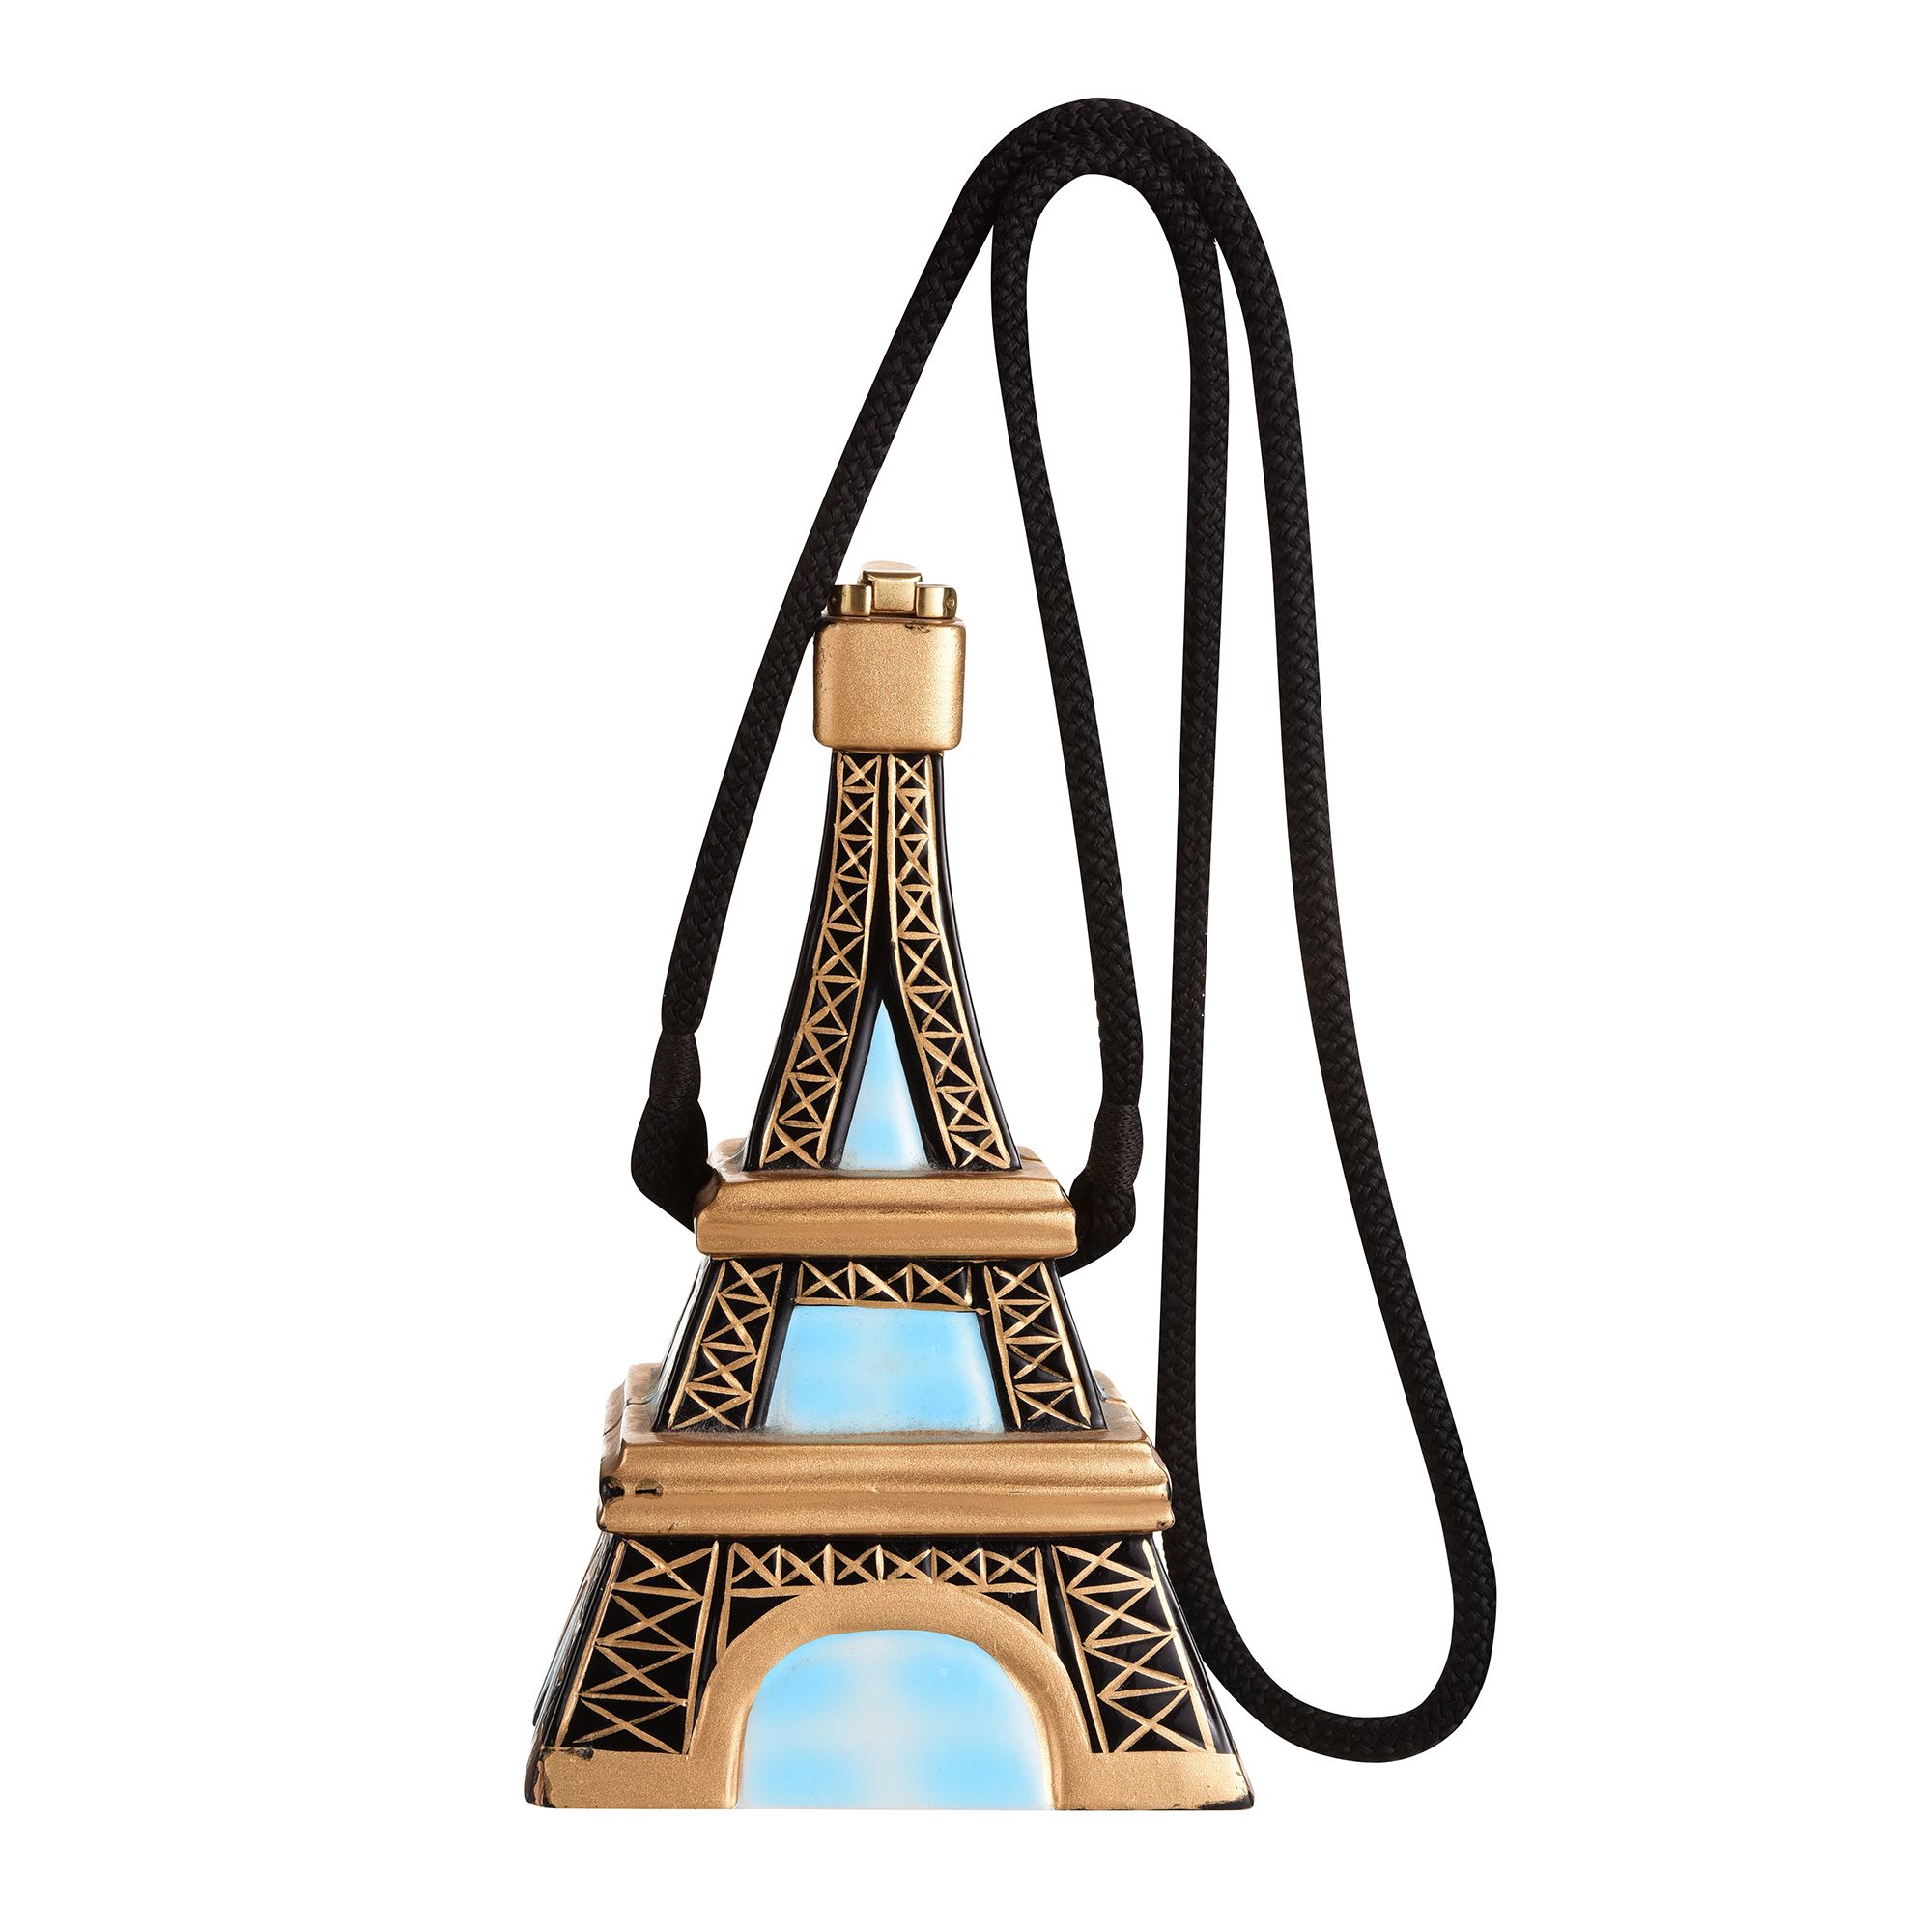 Buy Di Grazia Women's Printed Combo Of Satchel, Handbag & Sling Bag (Eiffel  Tower Design, Paris-3in1-Combo-Bag) at Amazon.in